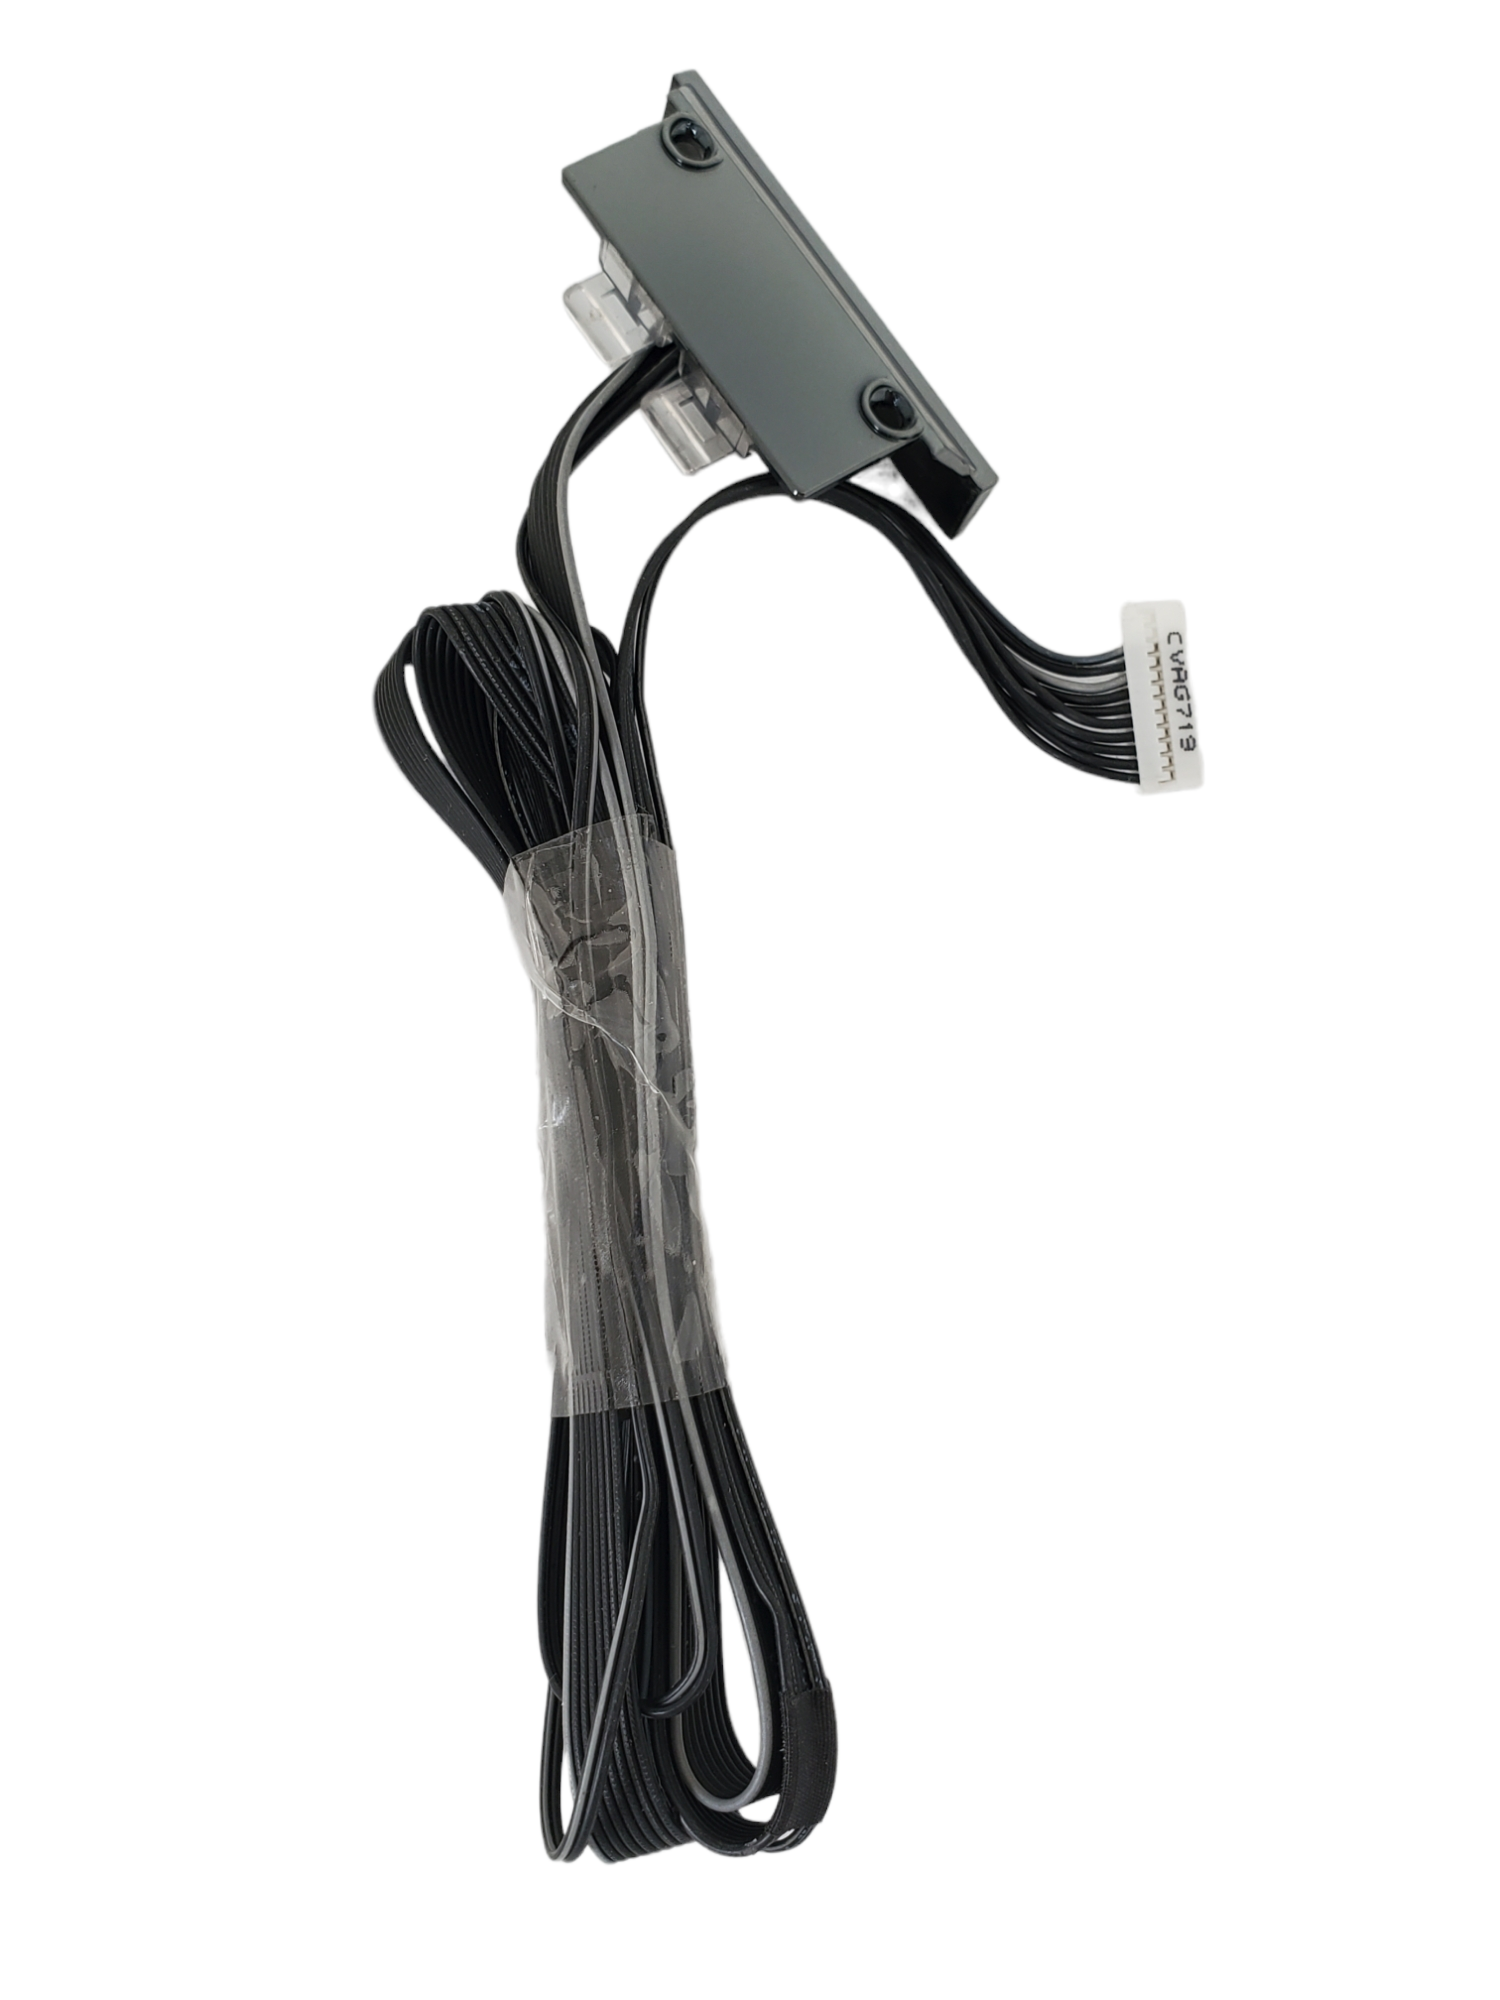 kit flexor, modulo de encendido/wifi, sensor infrarrojo y cables de corriente Samsung UN78K5900F